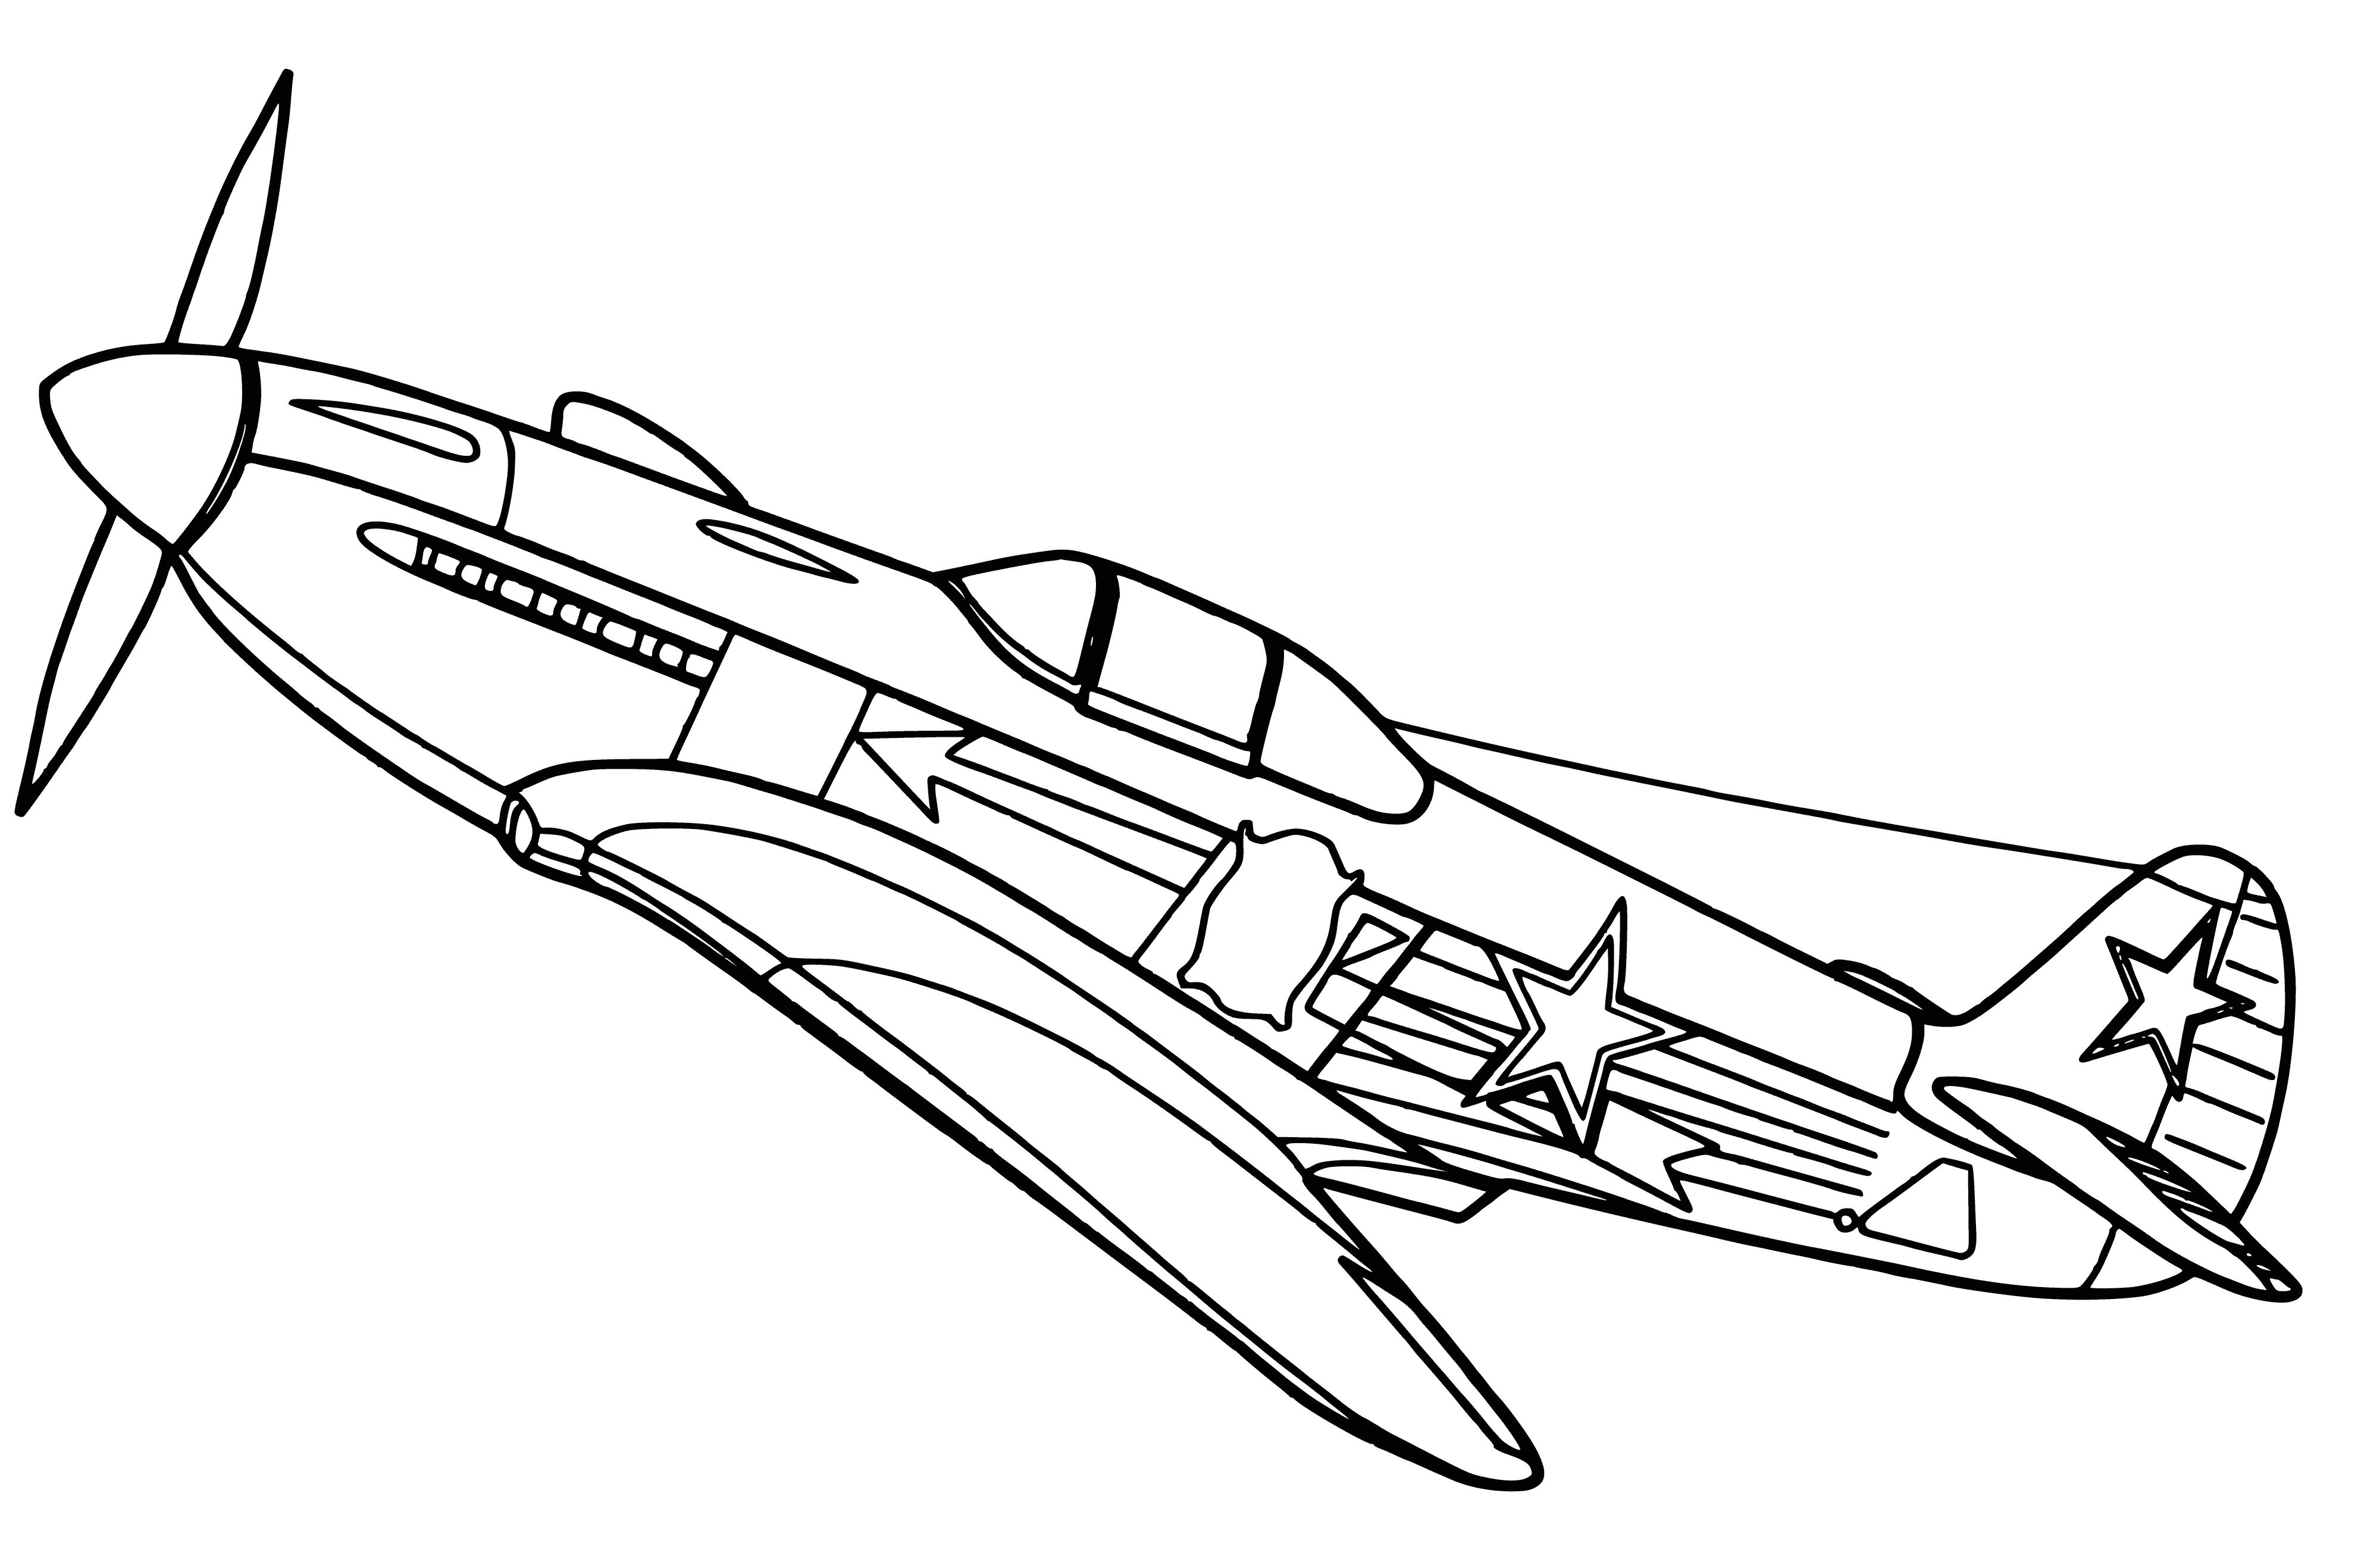 Myśliwiec Jak-3 kolorowanka